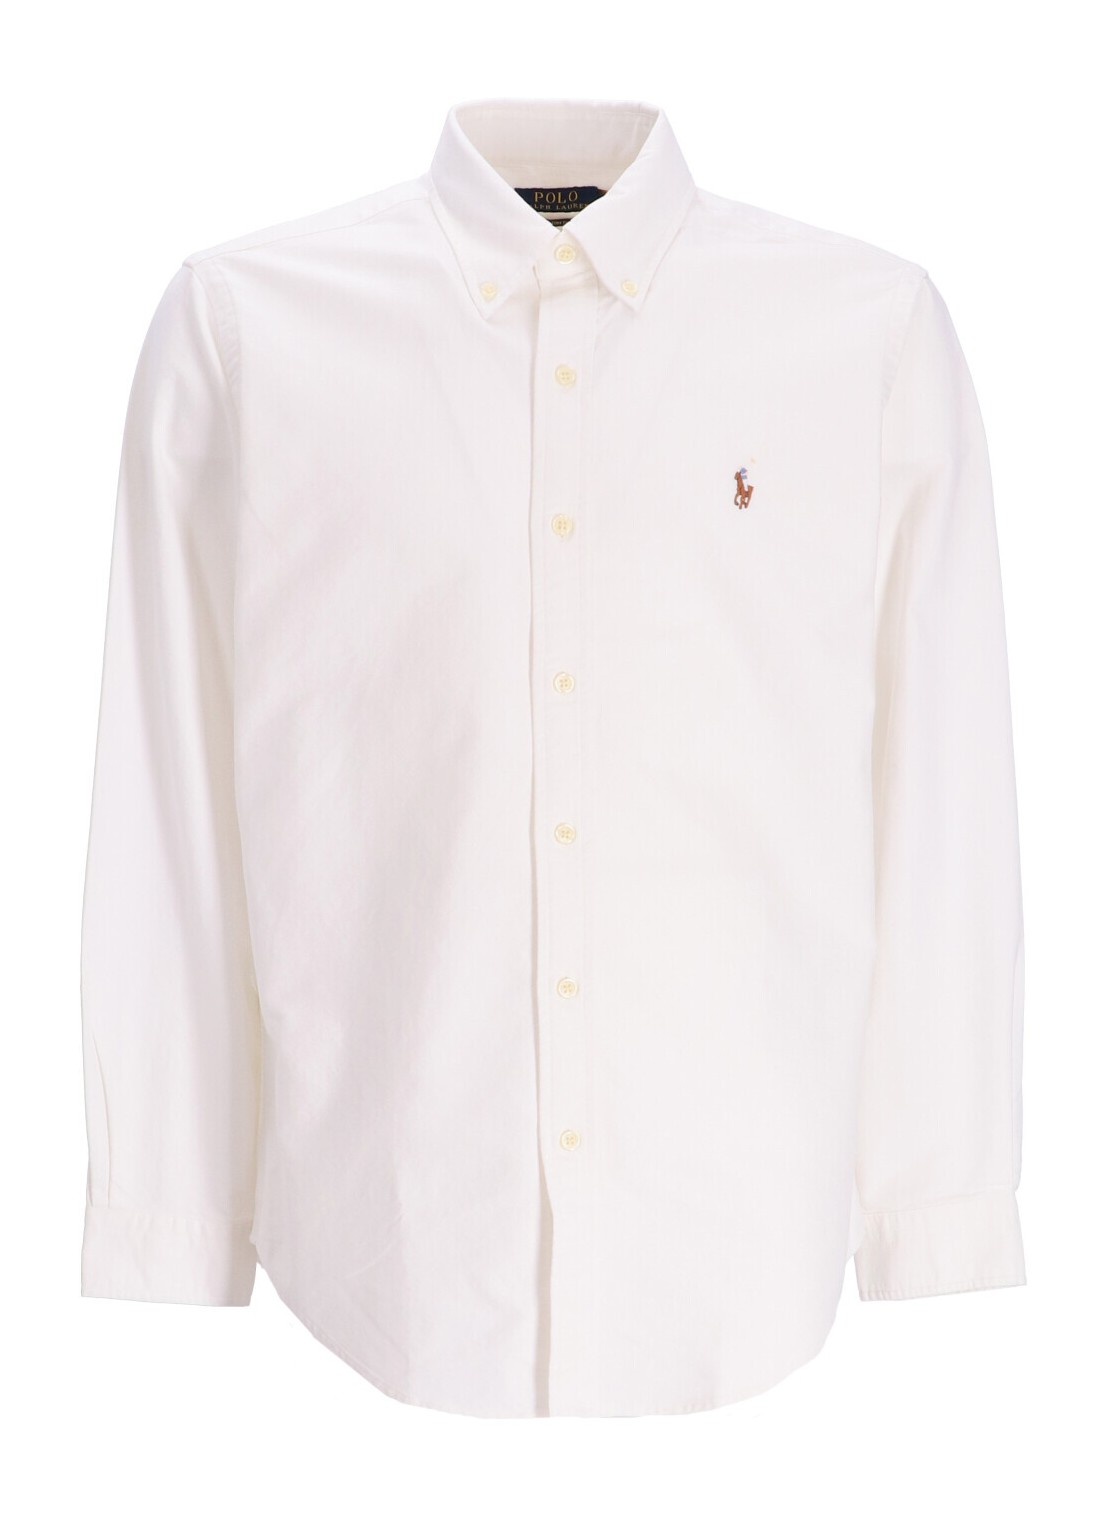 Camiseria polo ralph lauren shirt man cubdppcs-long sleeve-sport shirt 710792041001 white talla XL
 